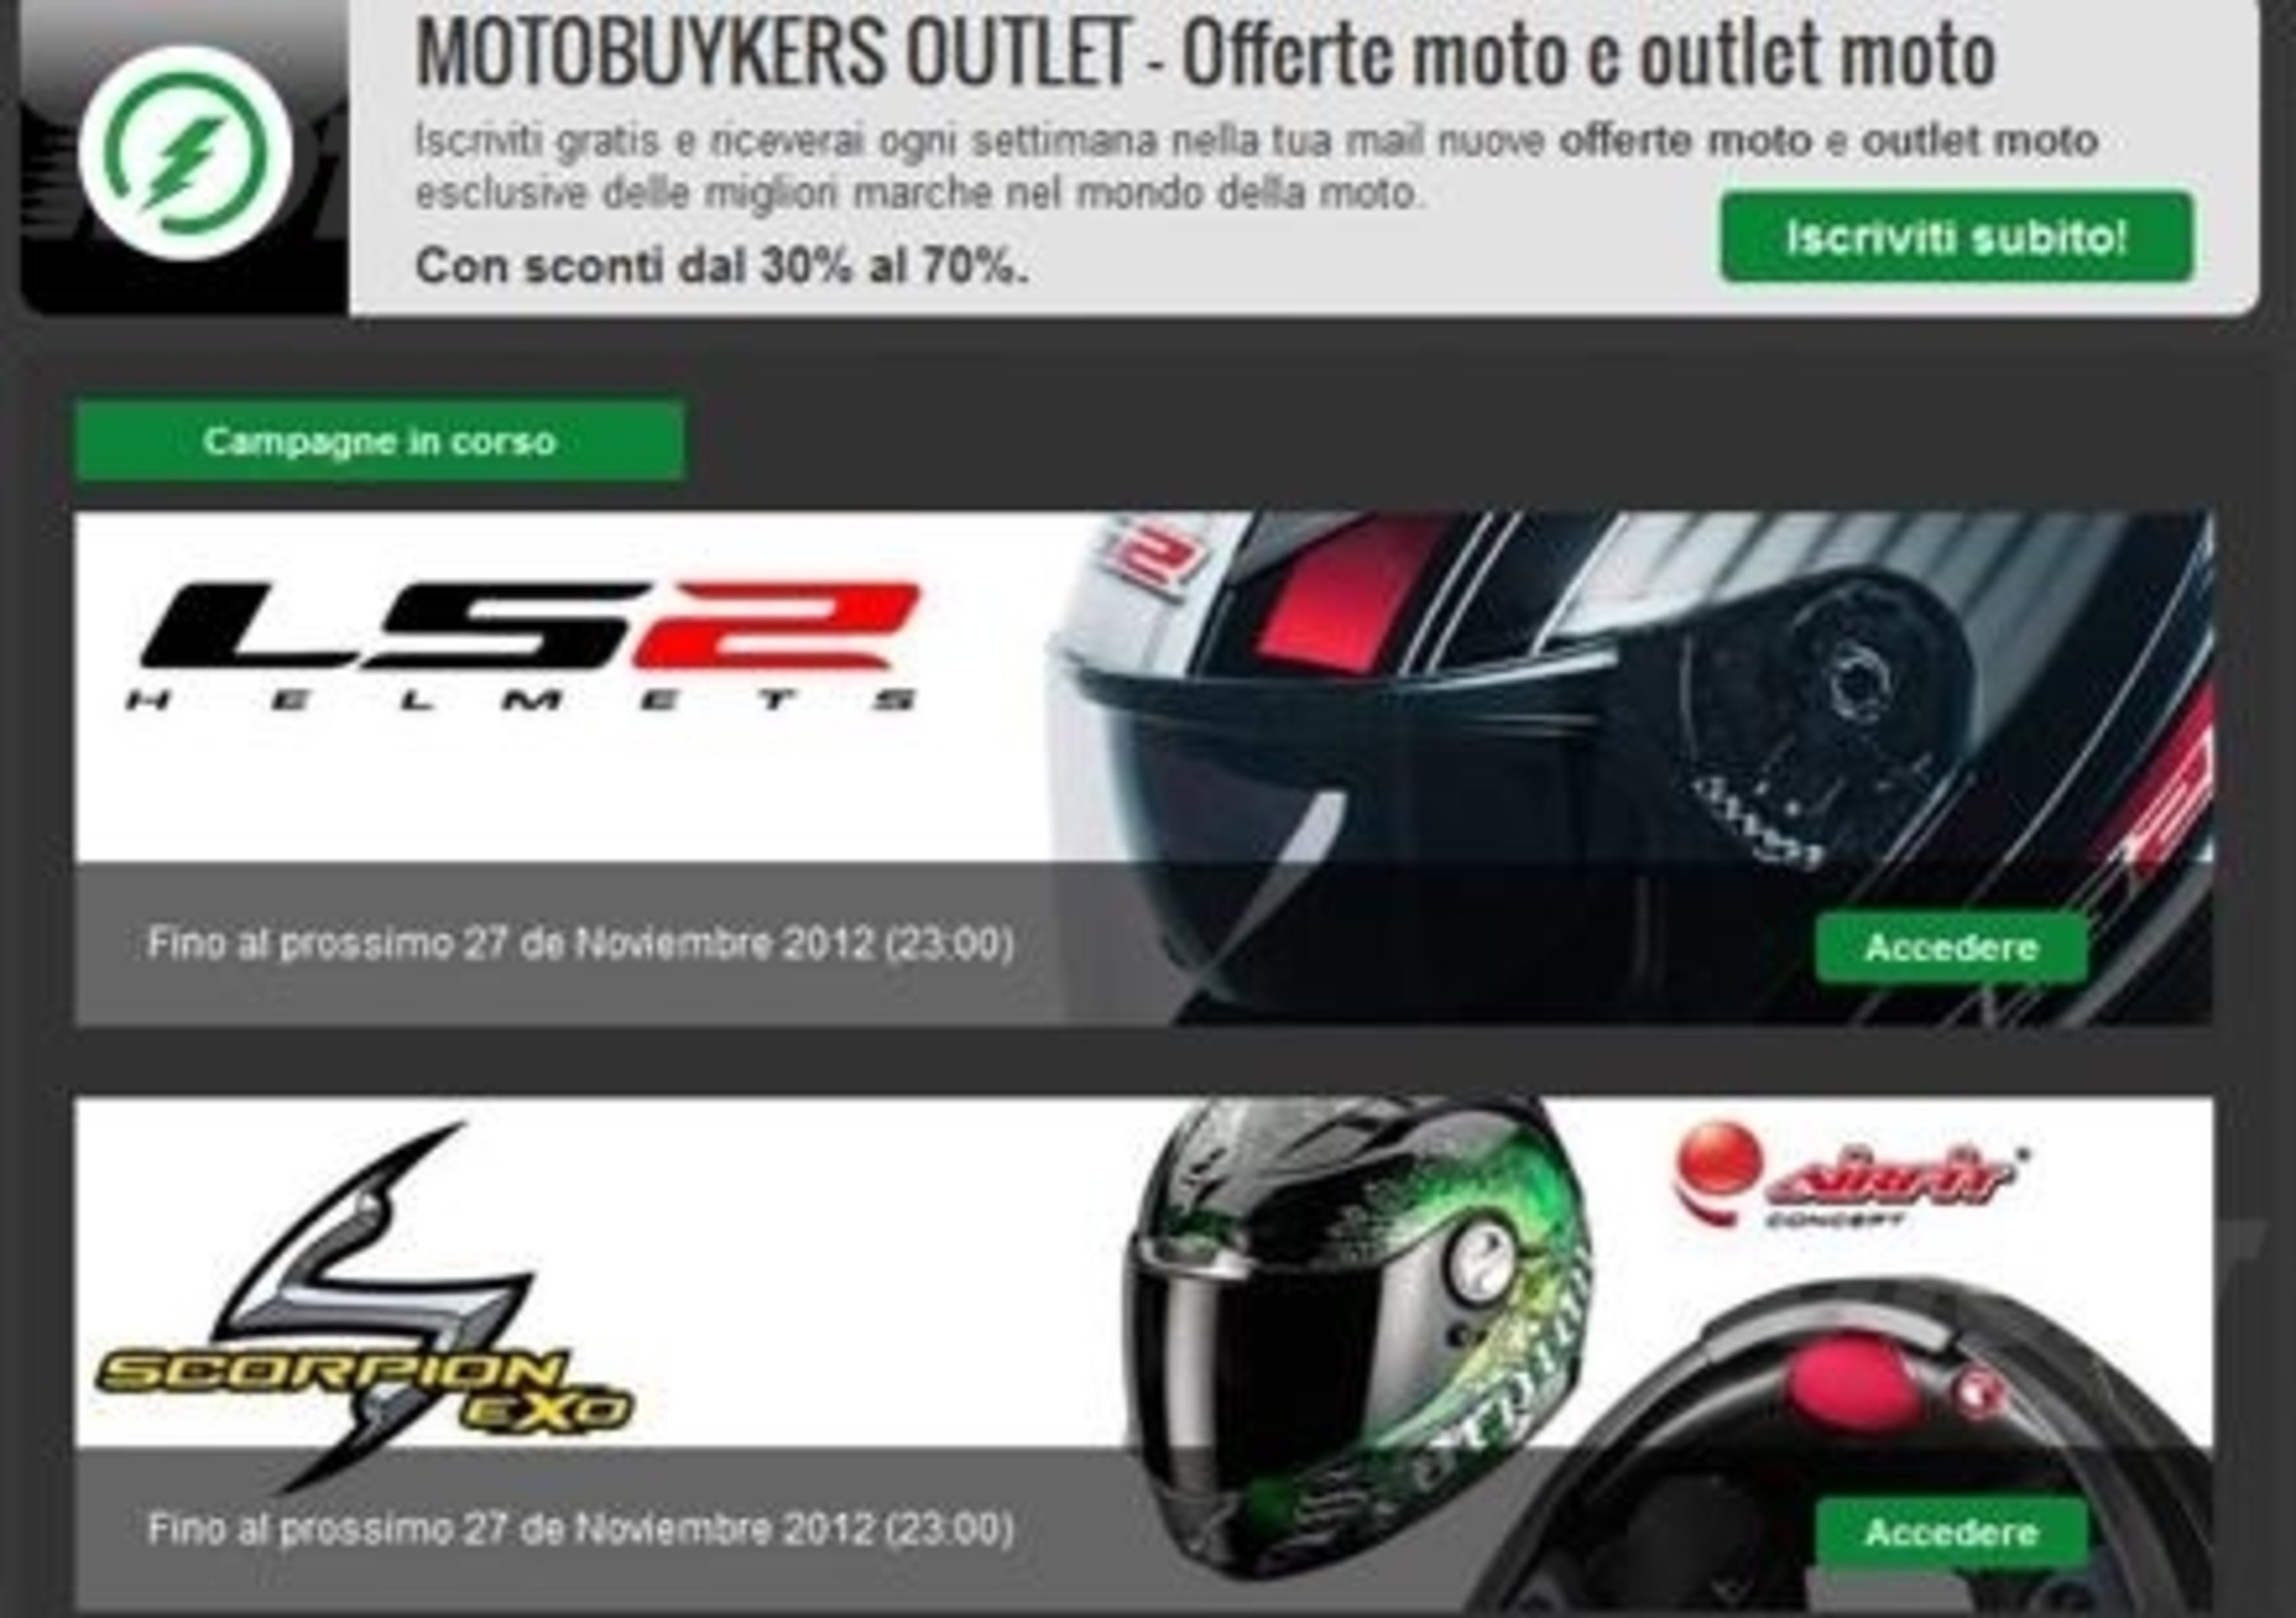 Motobuykers.it: il primo Outlet Privato di offerte online per motociclisti